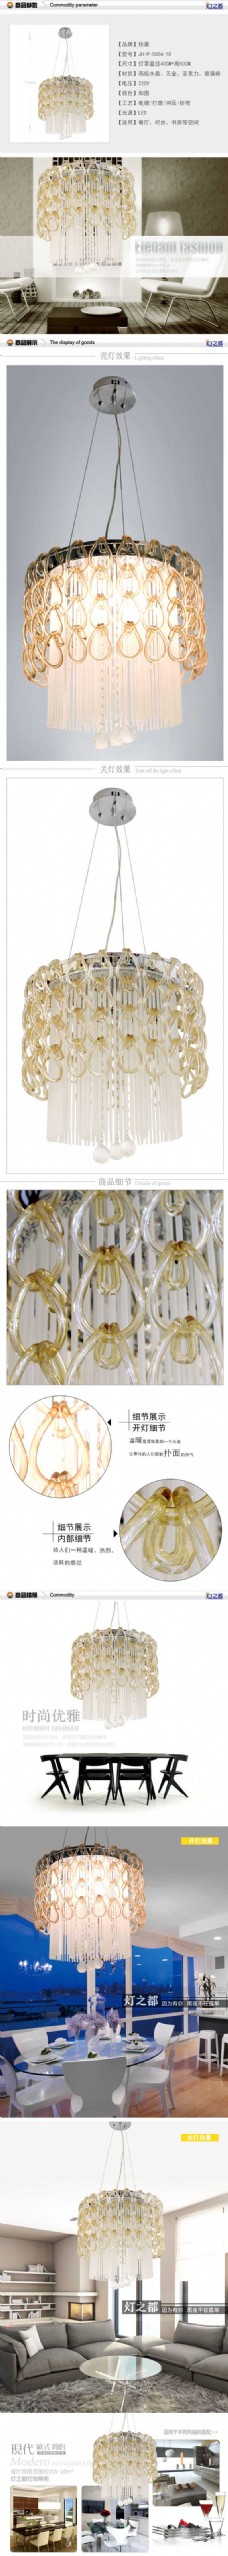 优雅时尚水晶灯-灯具描述